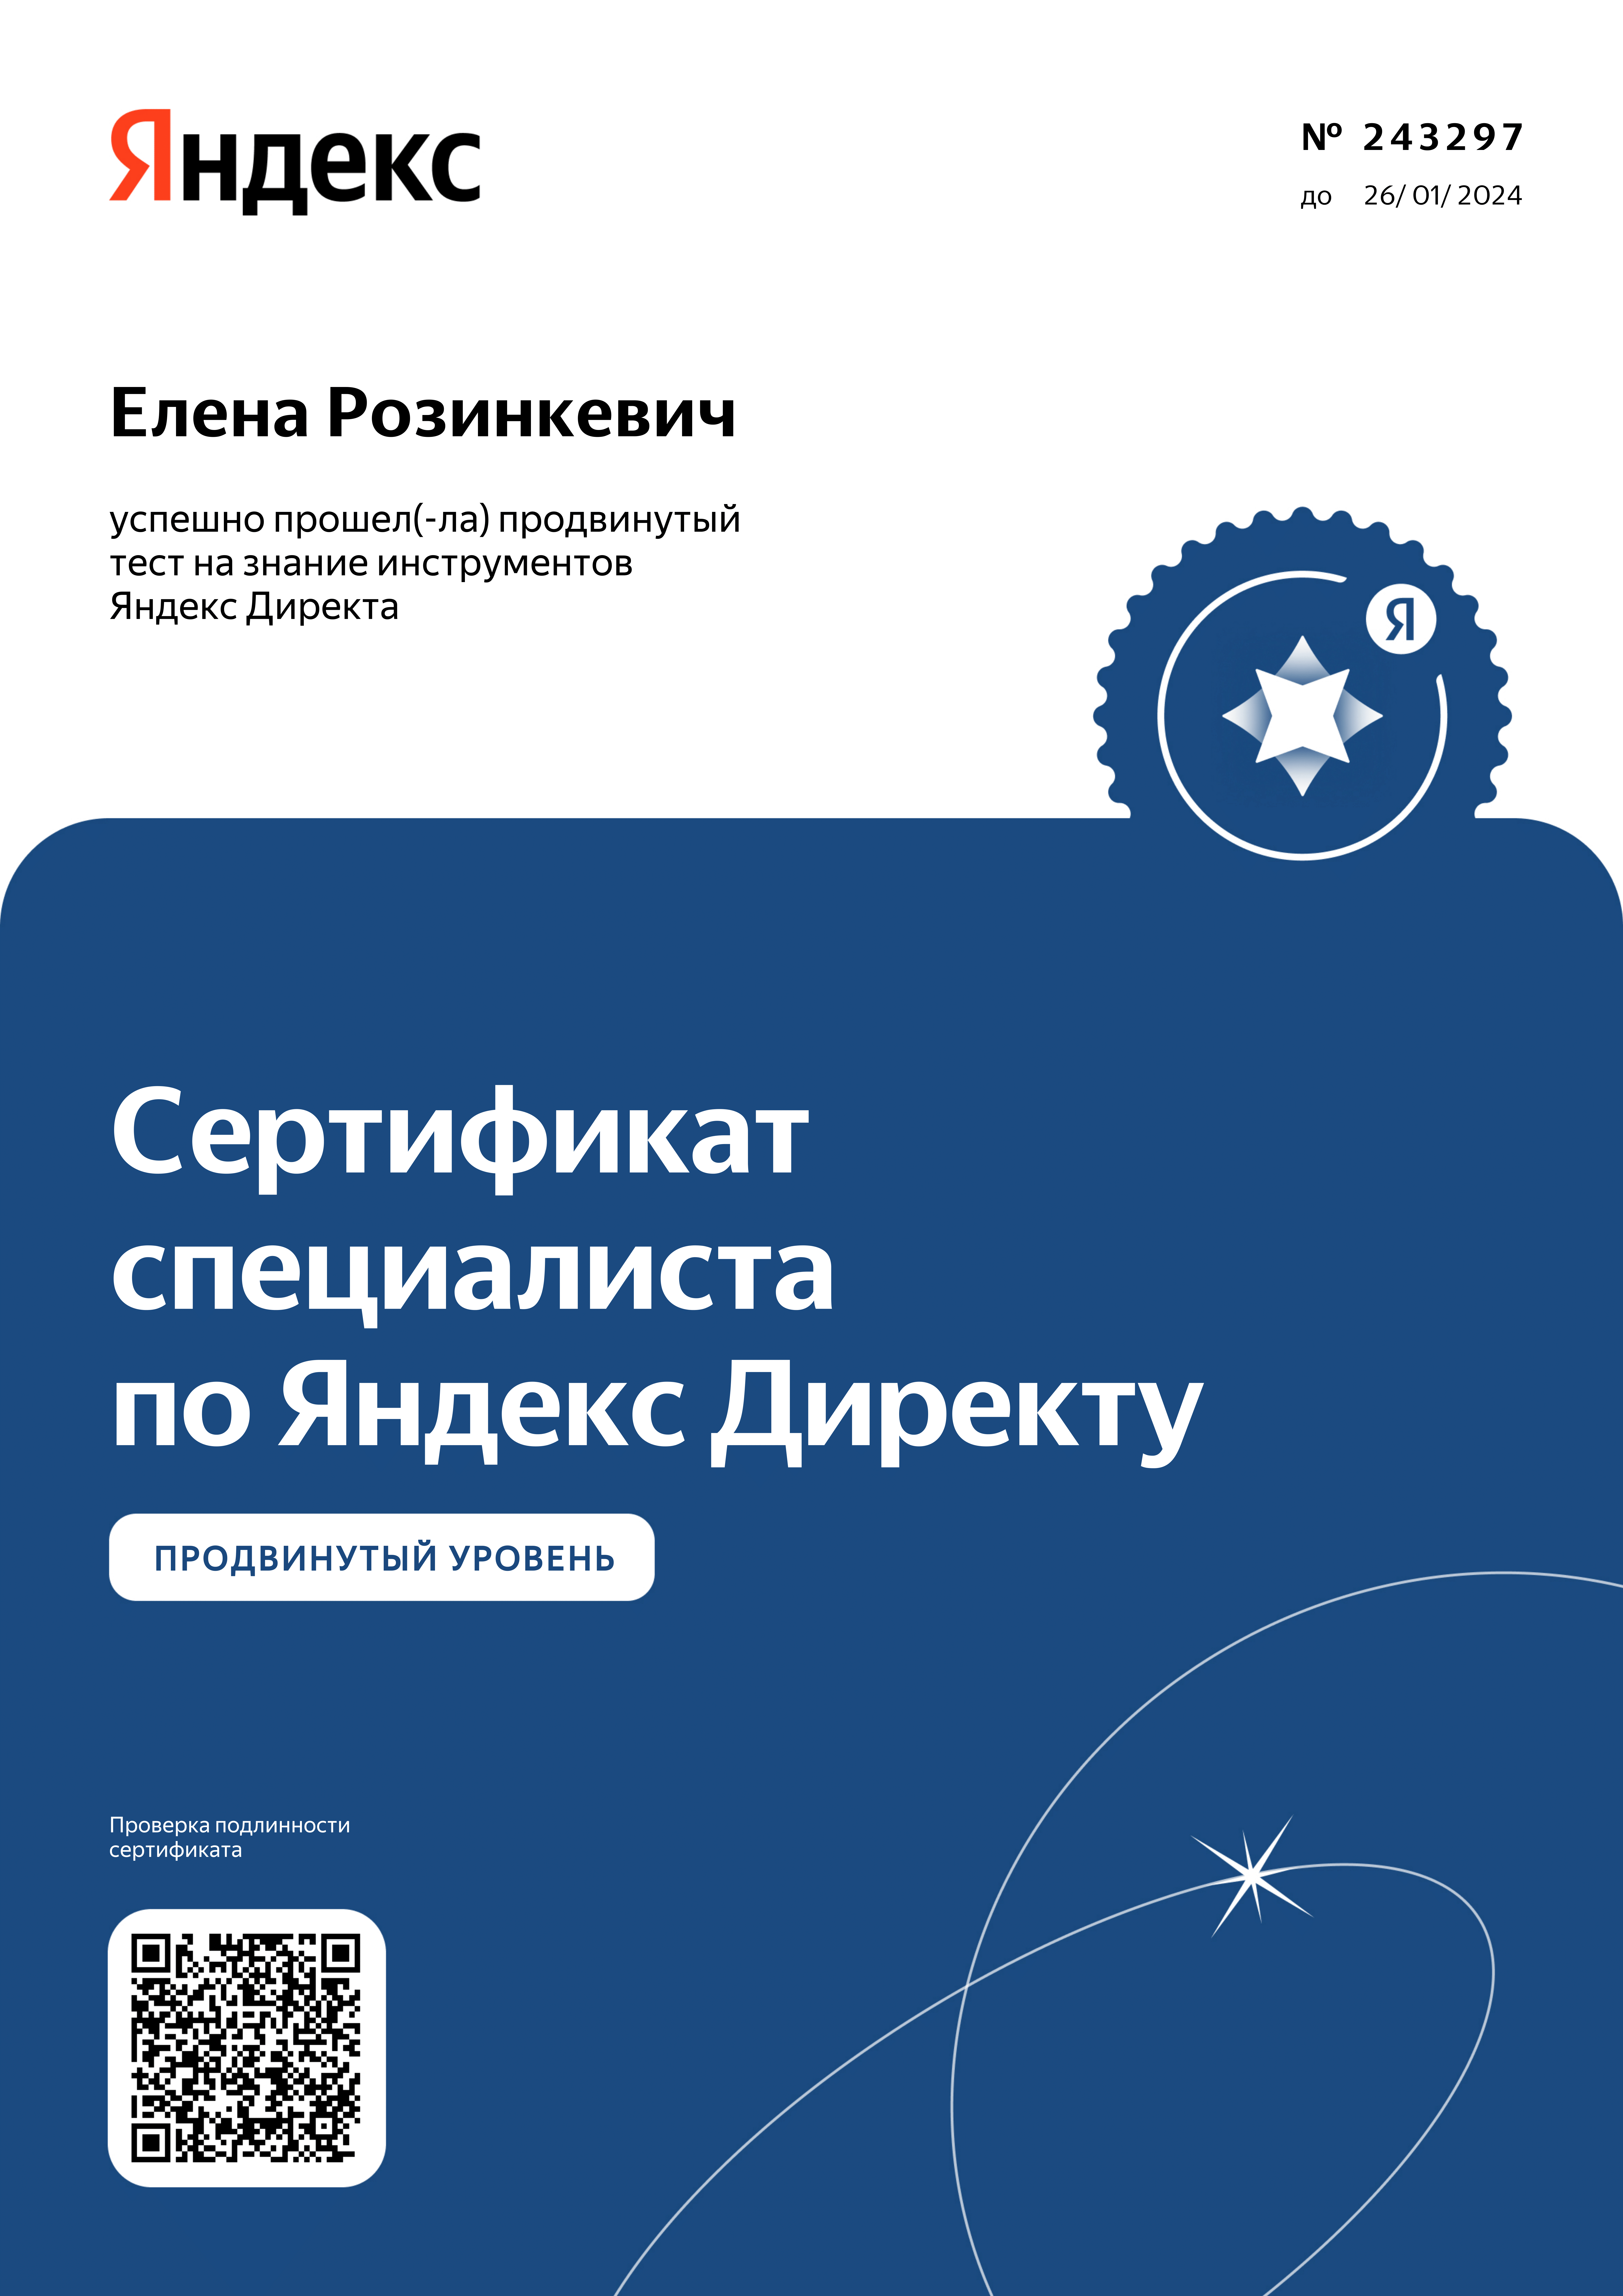 Розинкевич - Яндекс.Директ - Прокторинг - 2023